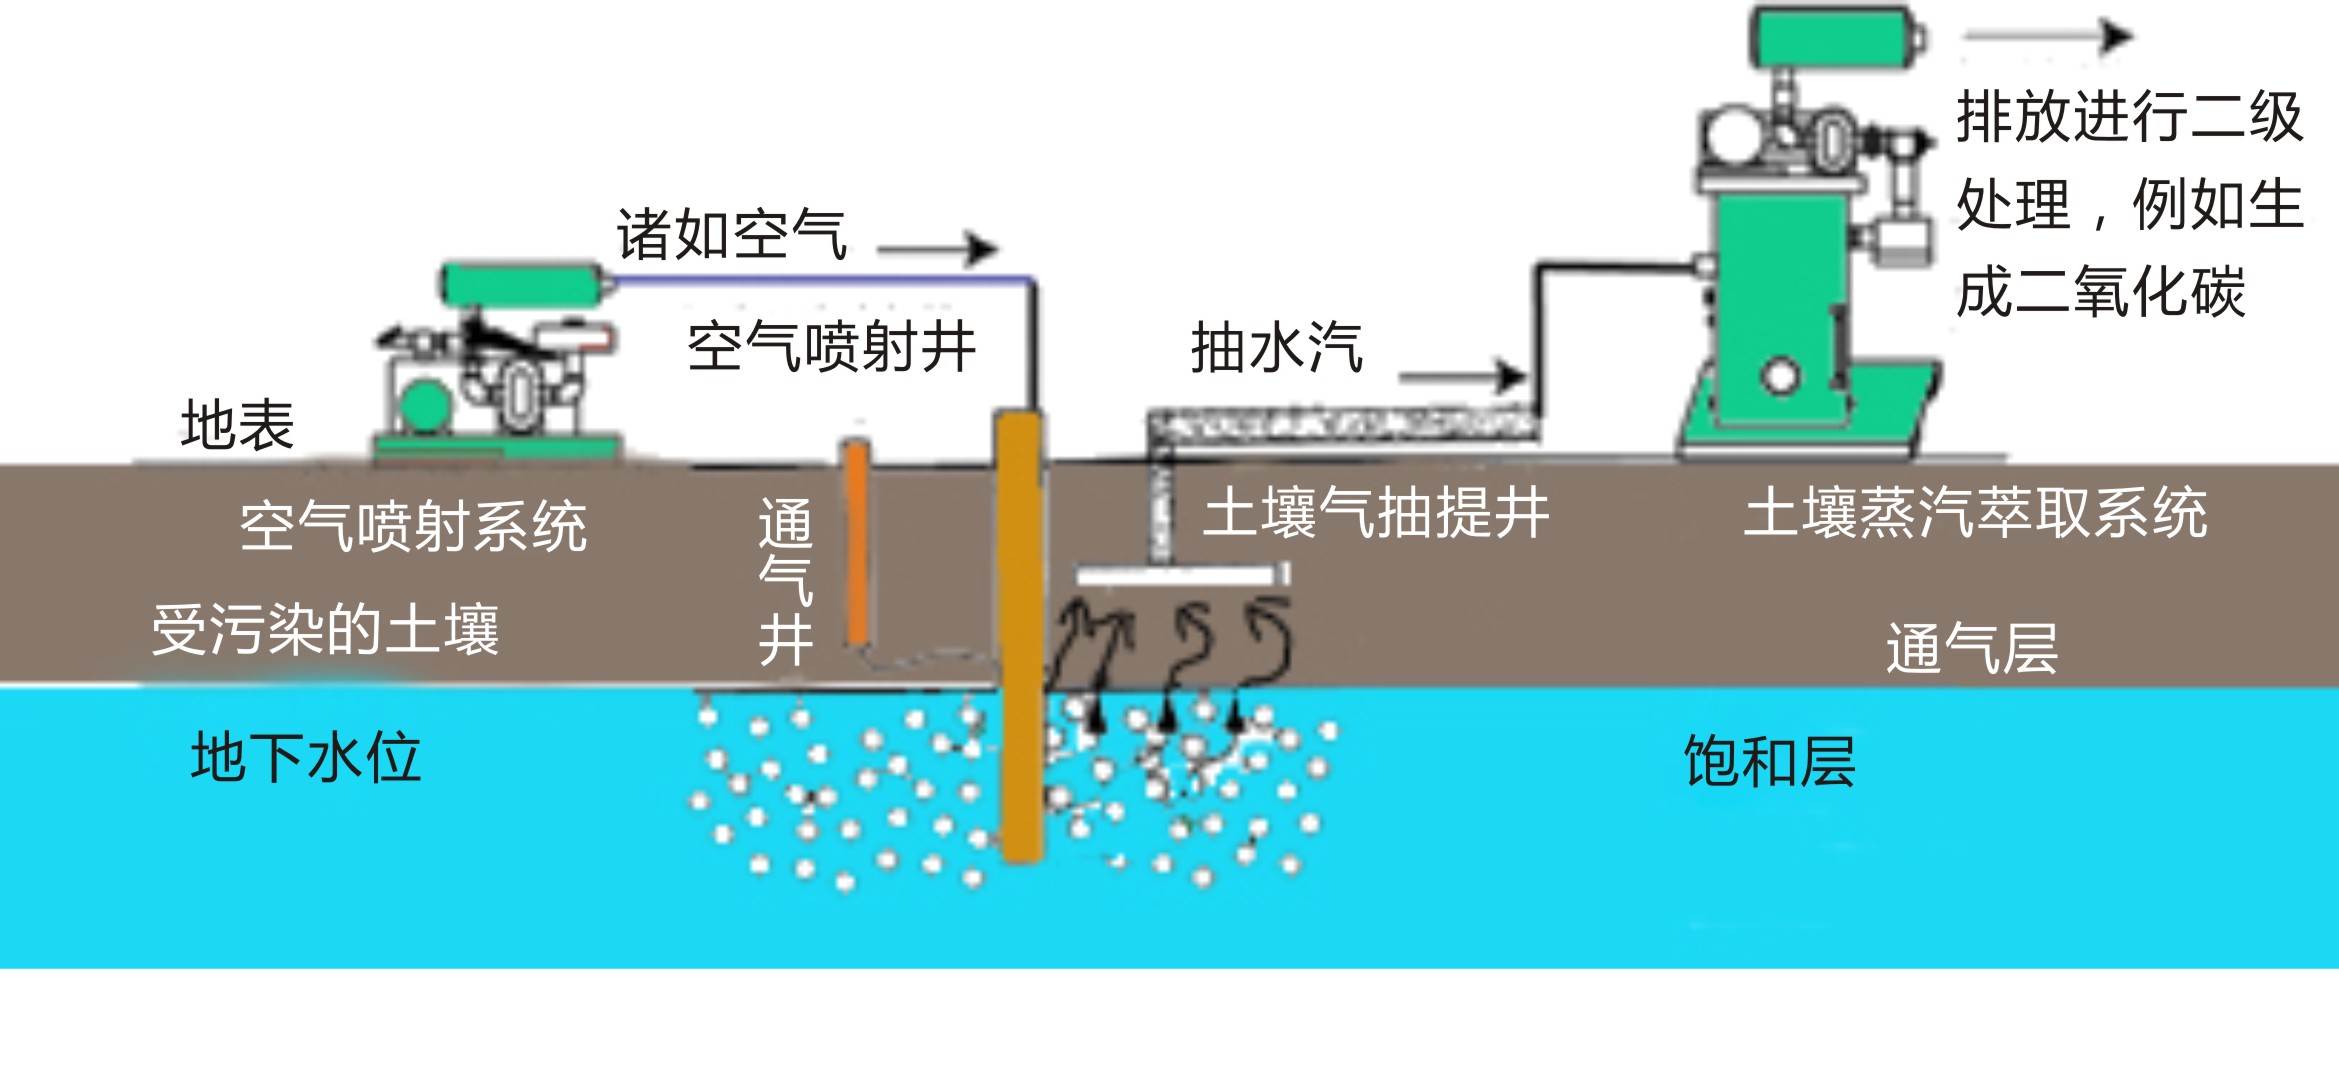 污染場地土壤修復技術之原位生物通風(圖1)